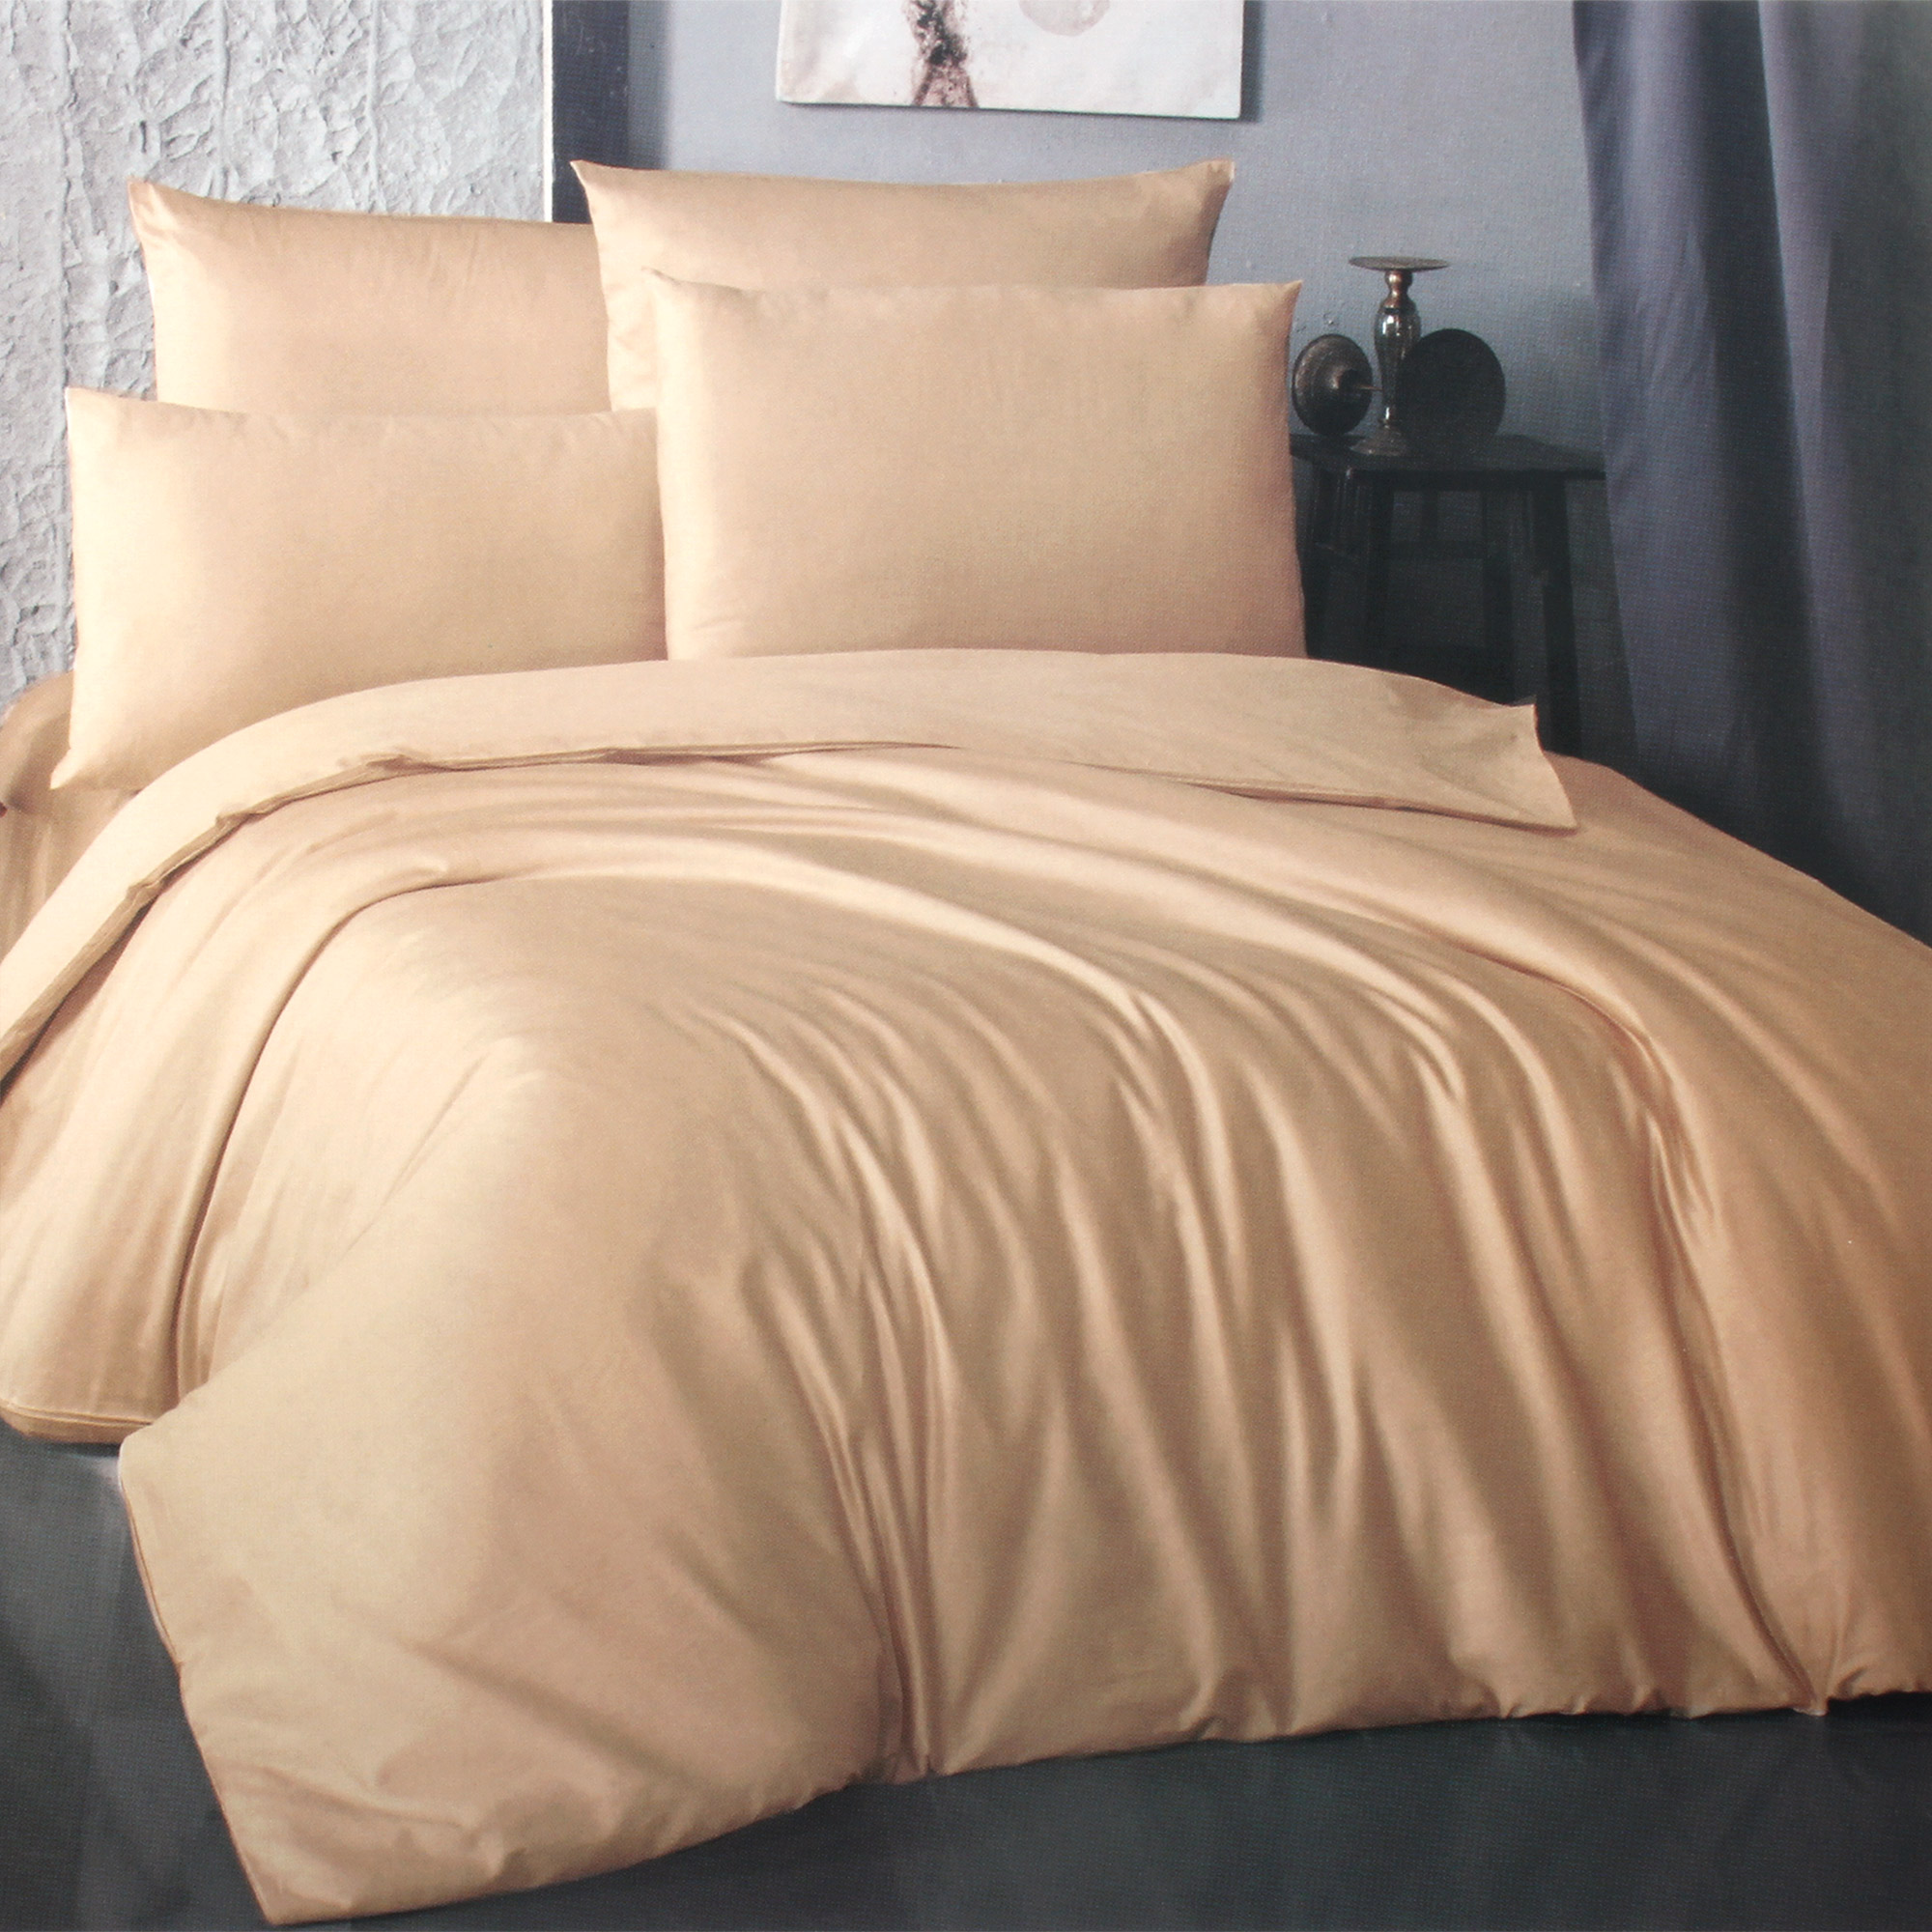 Комплект постельного белья La Besse Ранфорс бежевый Кинг сайз, размер Кинг сайз - фото 1